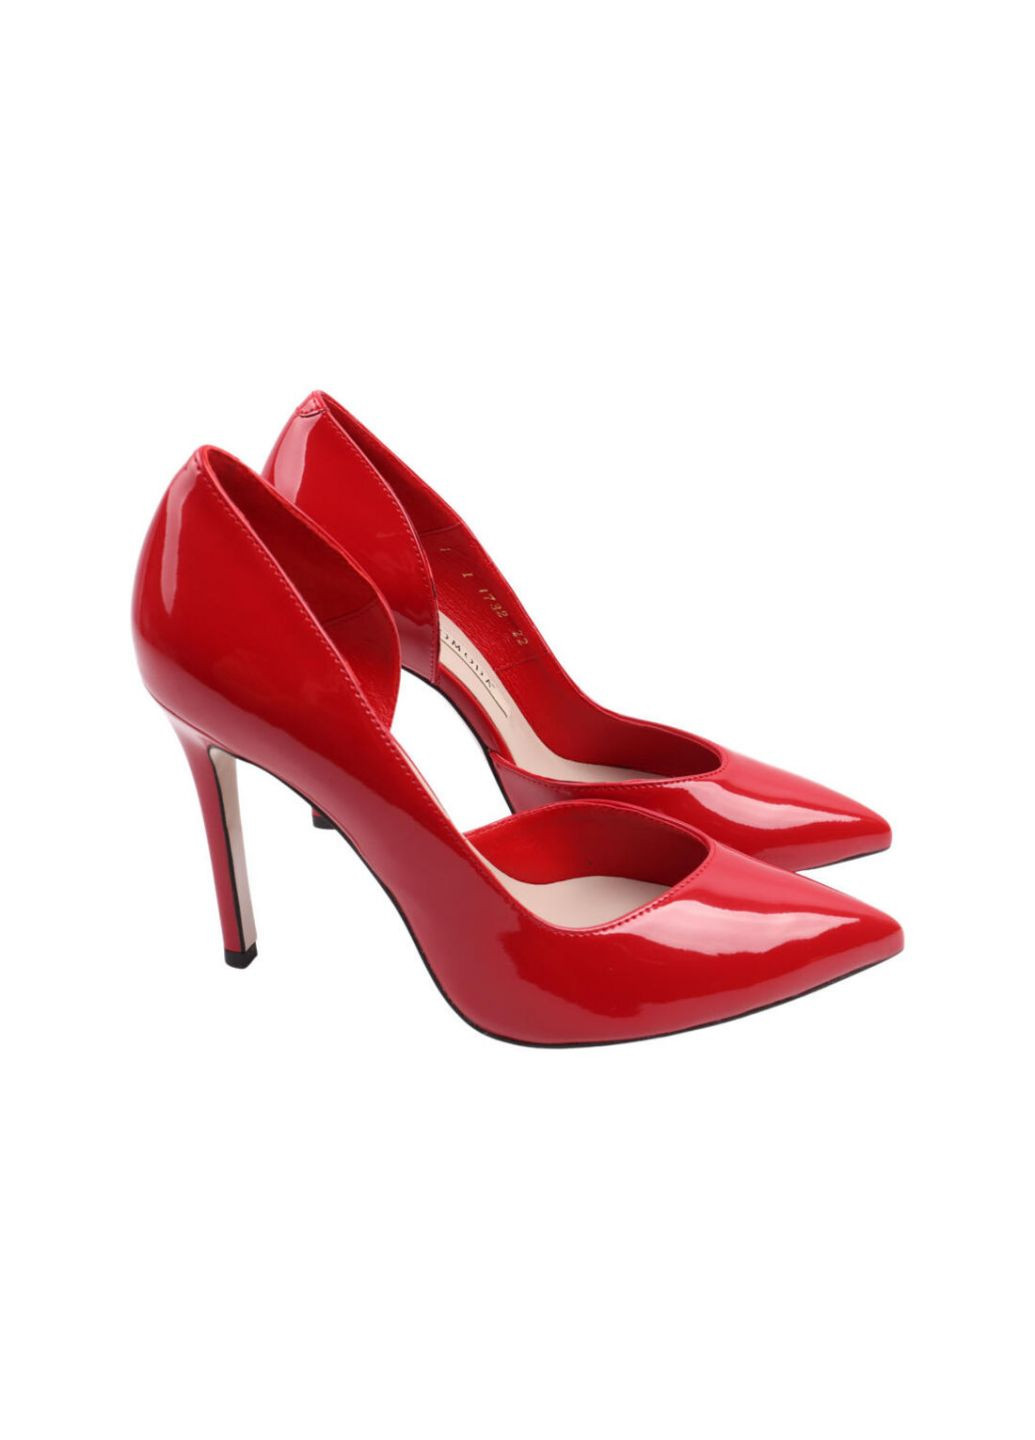 Туфли женские красные натуральная лаковая кожа Bravo Moda